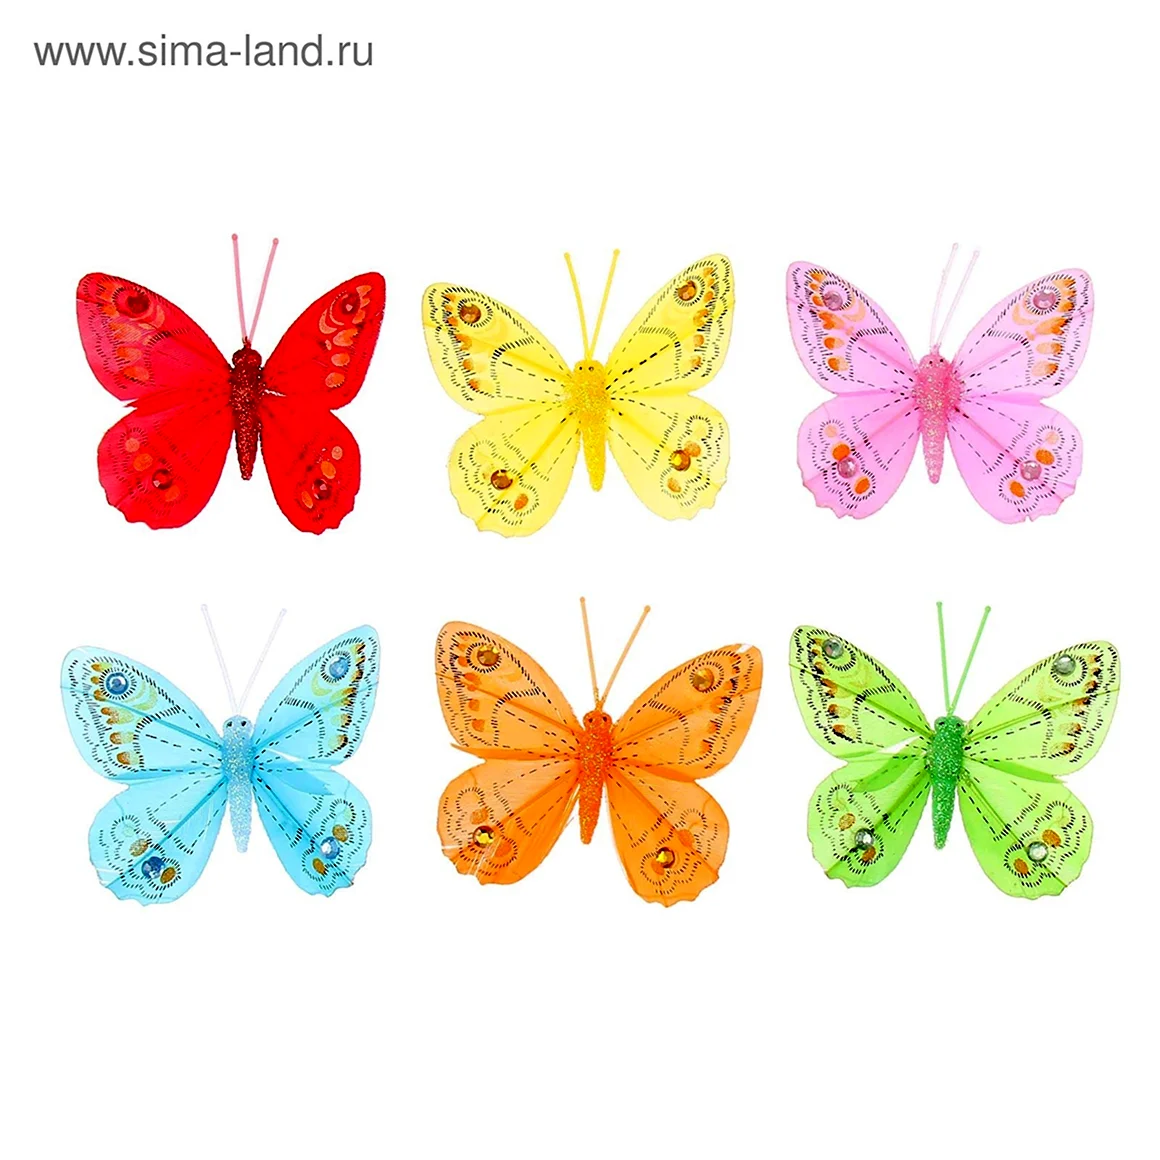 Яркие декоративные бабочки